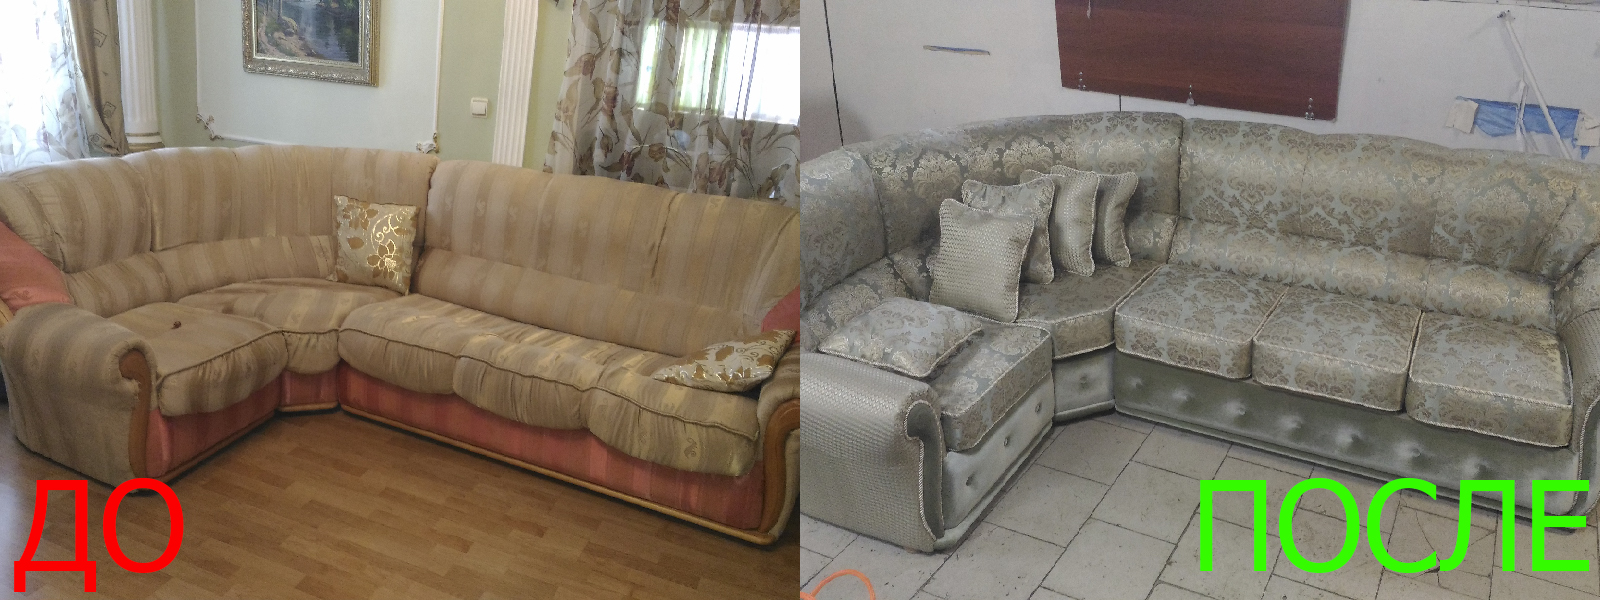 Обшивка мебели на дому в Керчи по адекватной цене, качественно, с гарантией 100%